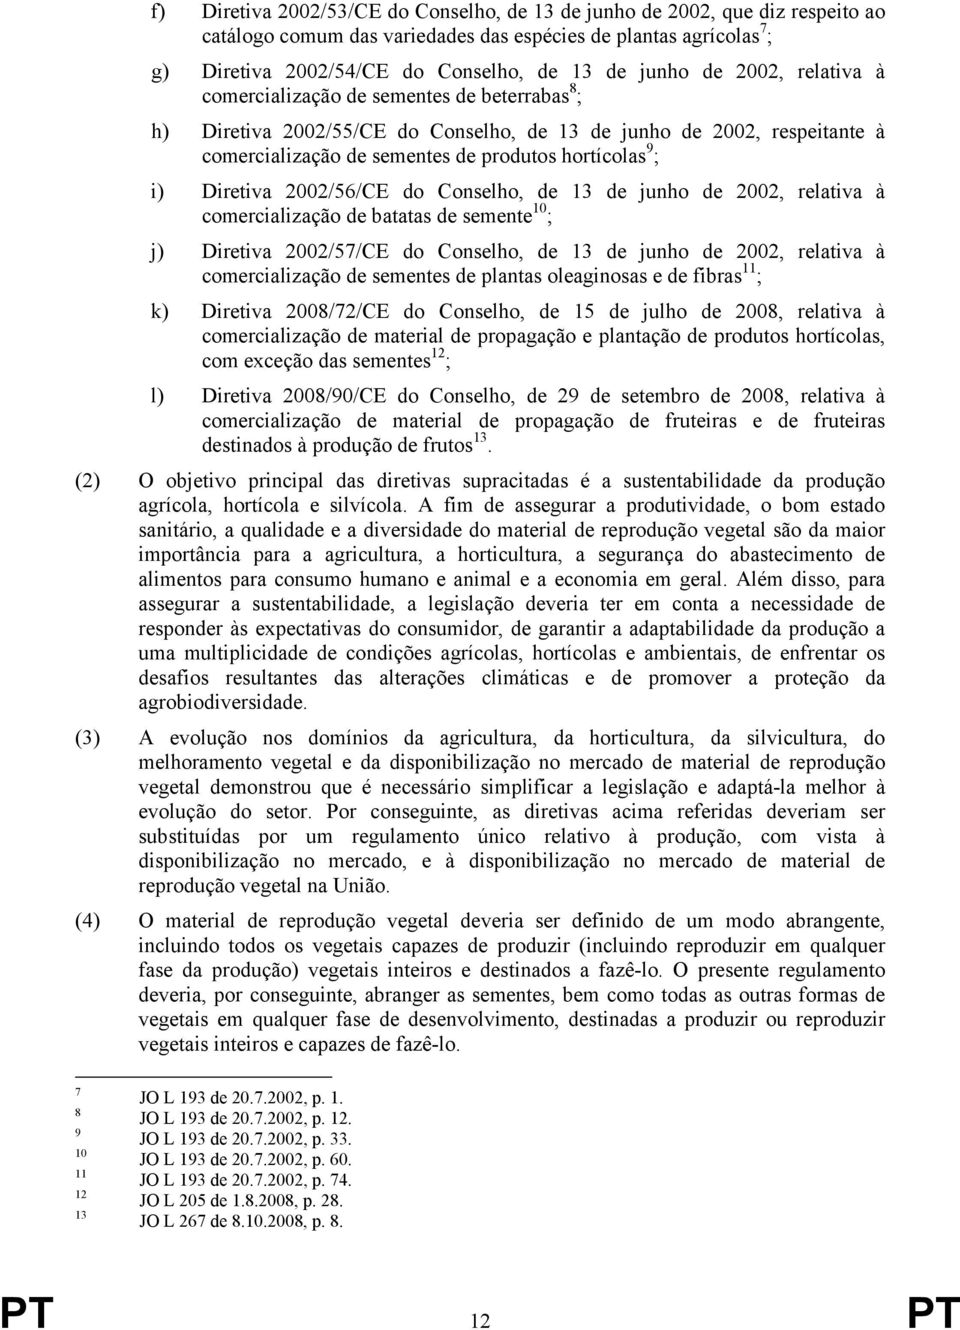 Diretiva 2002/56/CE do Conselho, de 13 de junho de 2002, relativa à comercialização de batatas de semente 10 ; j) Diretiva 2002/57/CE do Conselho, de 13 de junho de 2002, relativa à comercialização